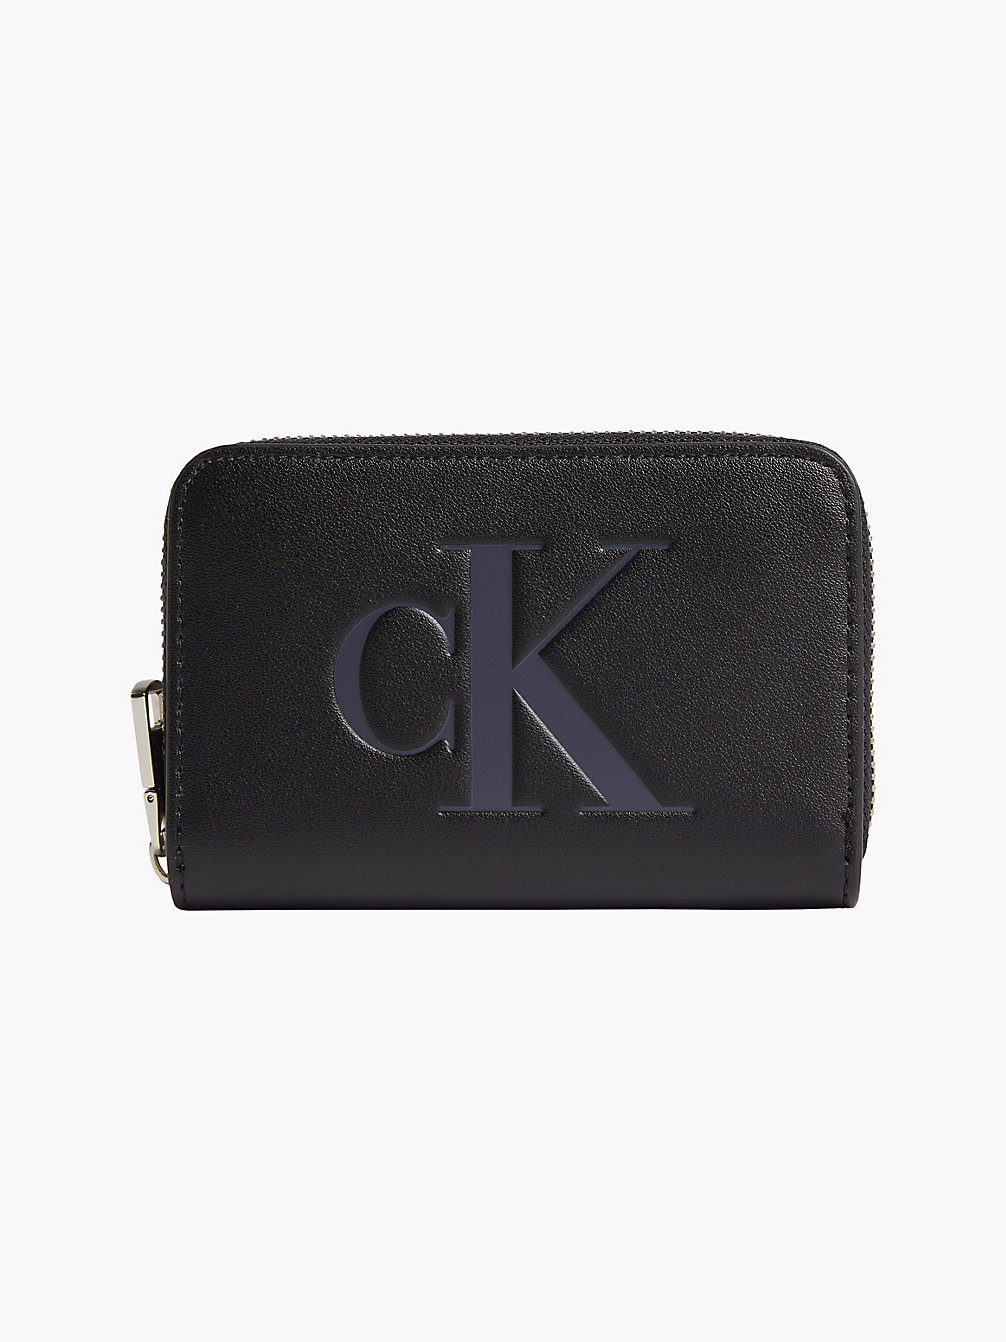 BLACK Portafoglio Con Zip Integrale E Logo undefined donna Calvin Klein